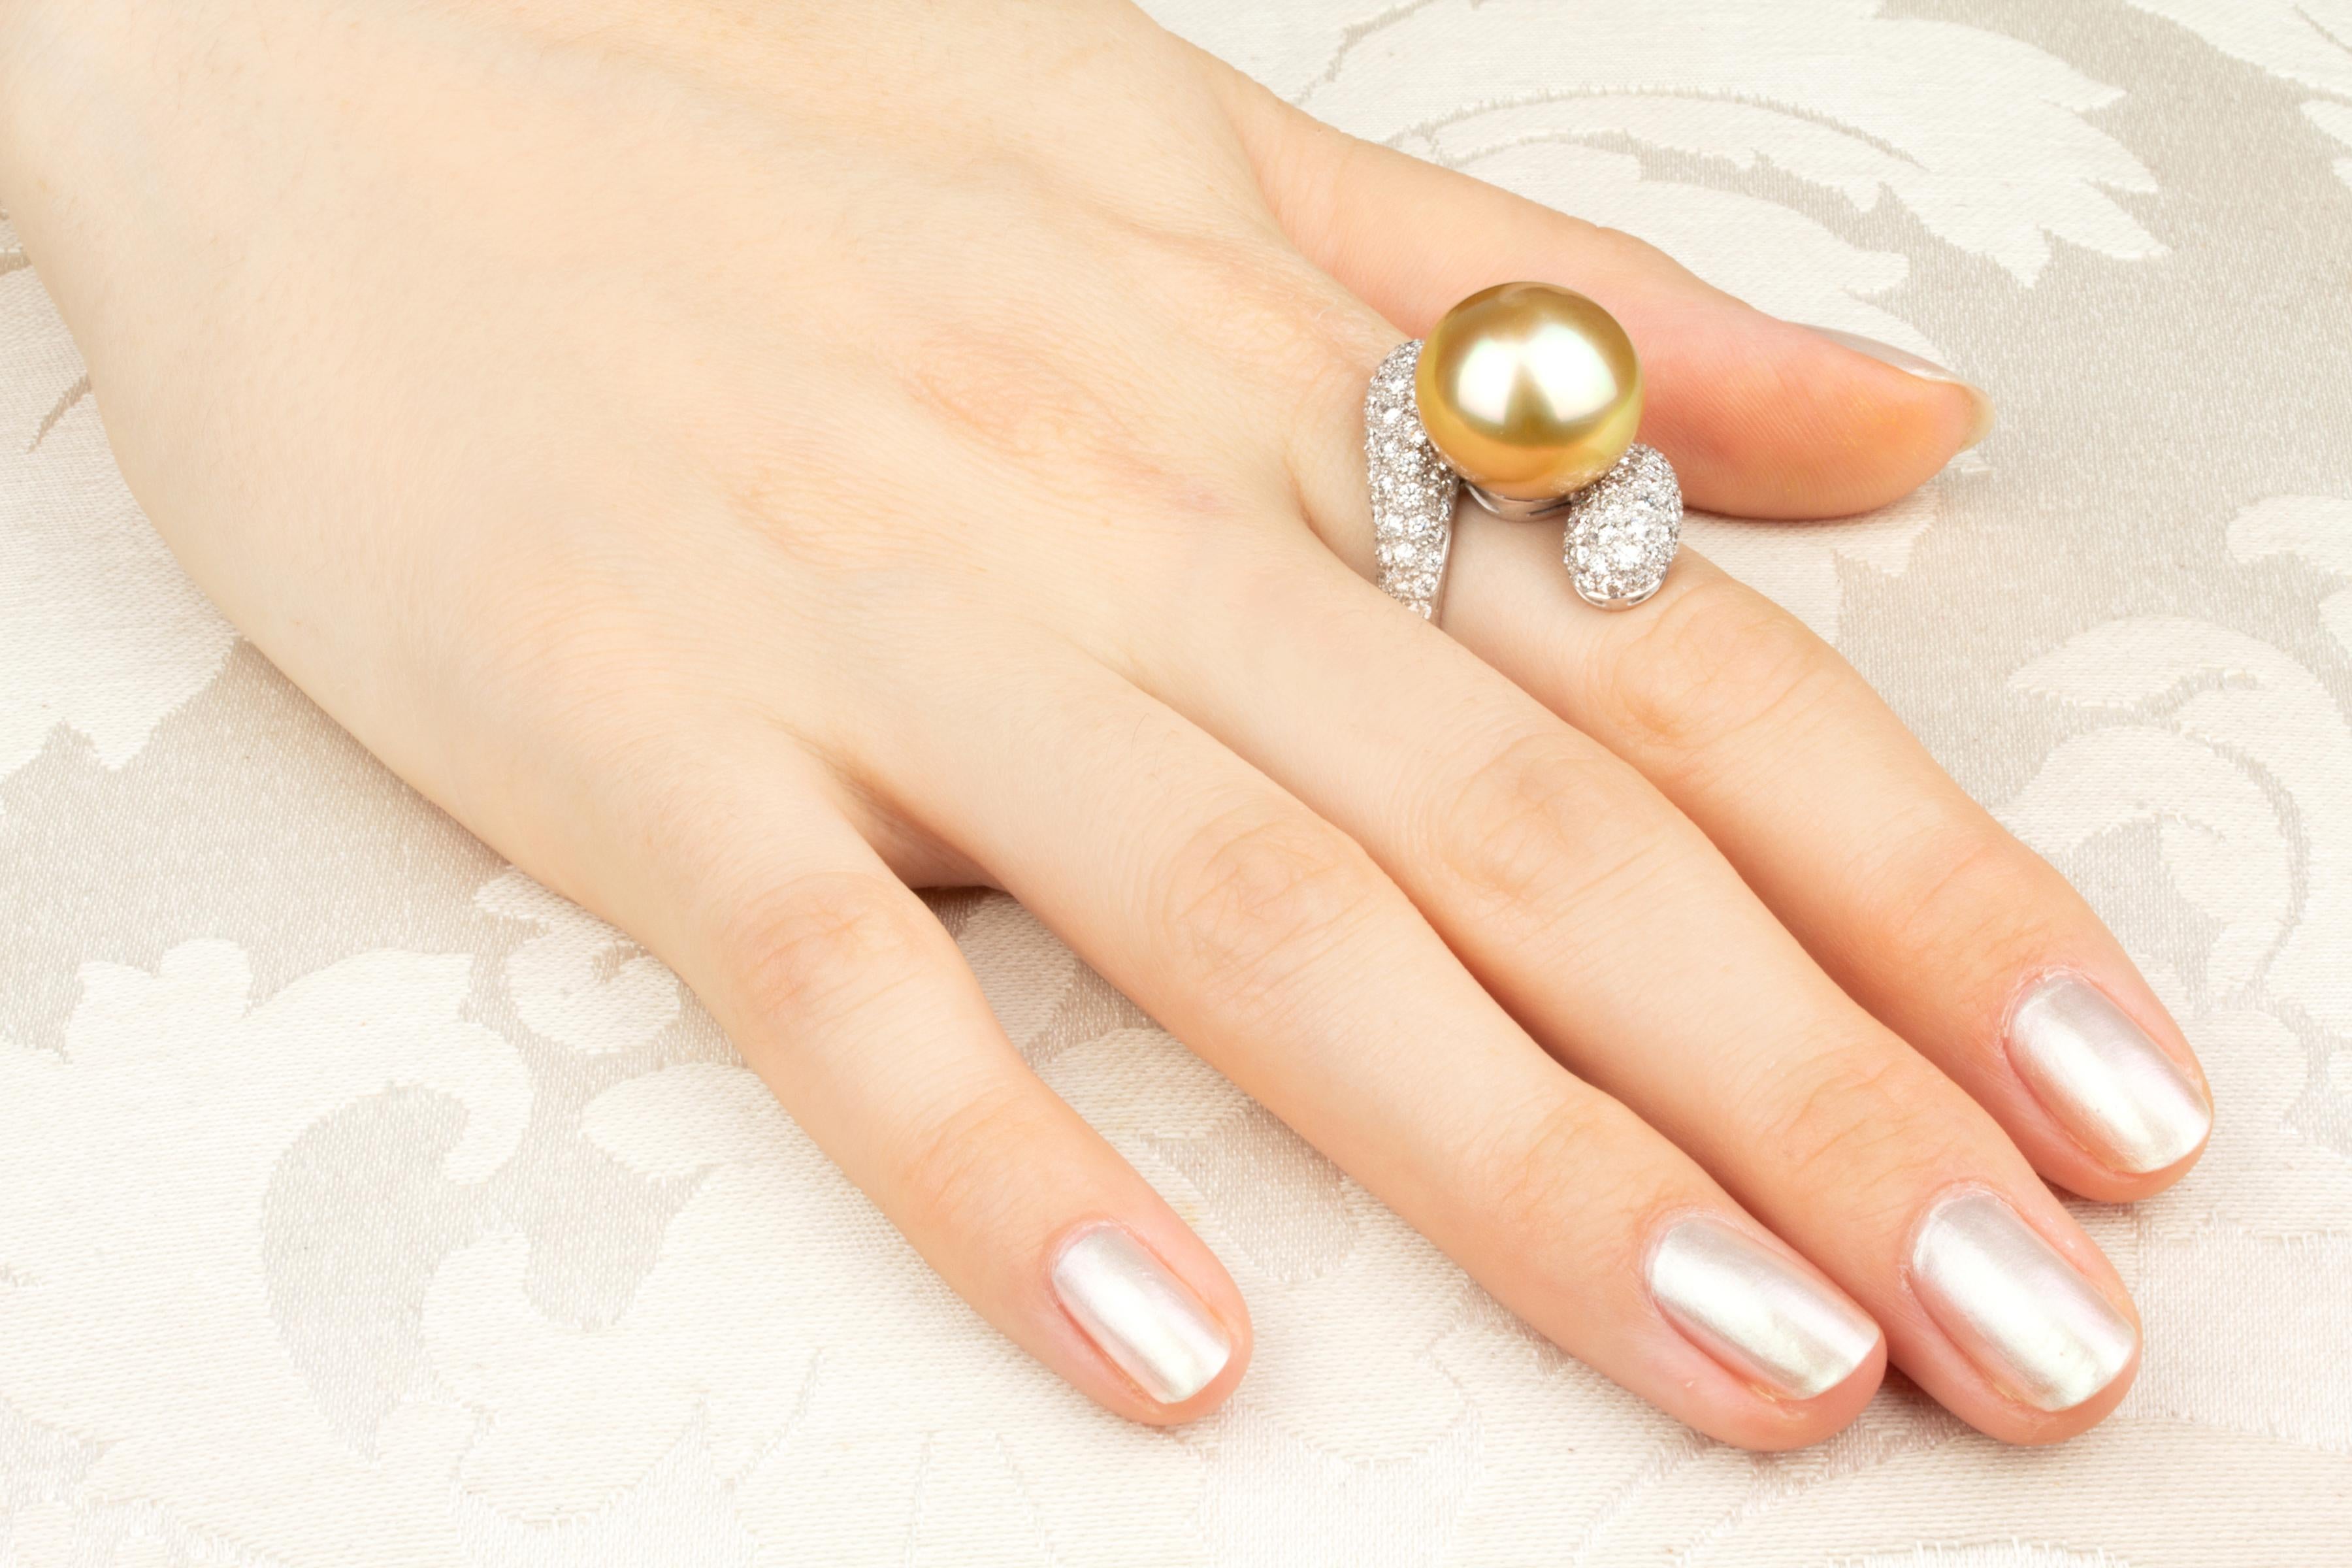 Dieser goldene Cocktailring aus Südseeperlen und Diamanten hat eine Perle von 15 mm Durchmesser. Die Perle ist naturbelassen. Sie weist ein prächtiges Perlmutt auf und ihre natürliche Farbe und ihr Glanz wurden in keiner Weise verbessert. Die Perle